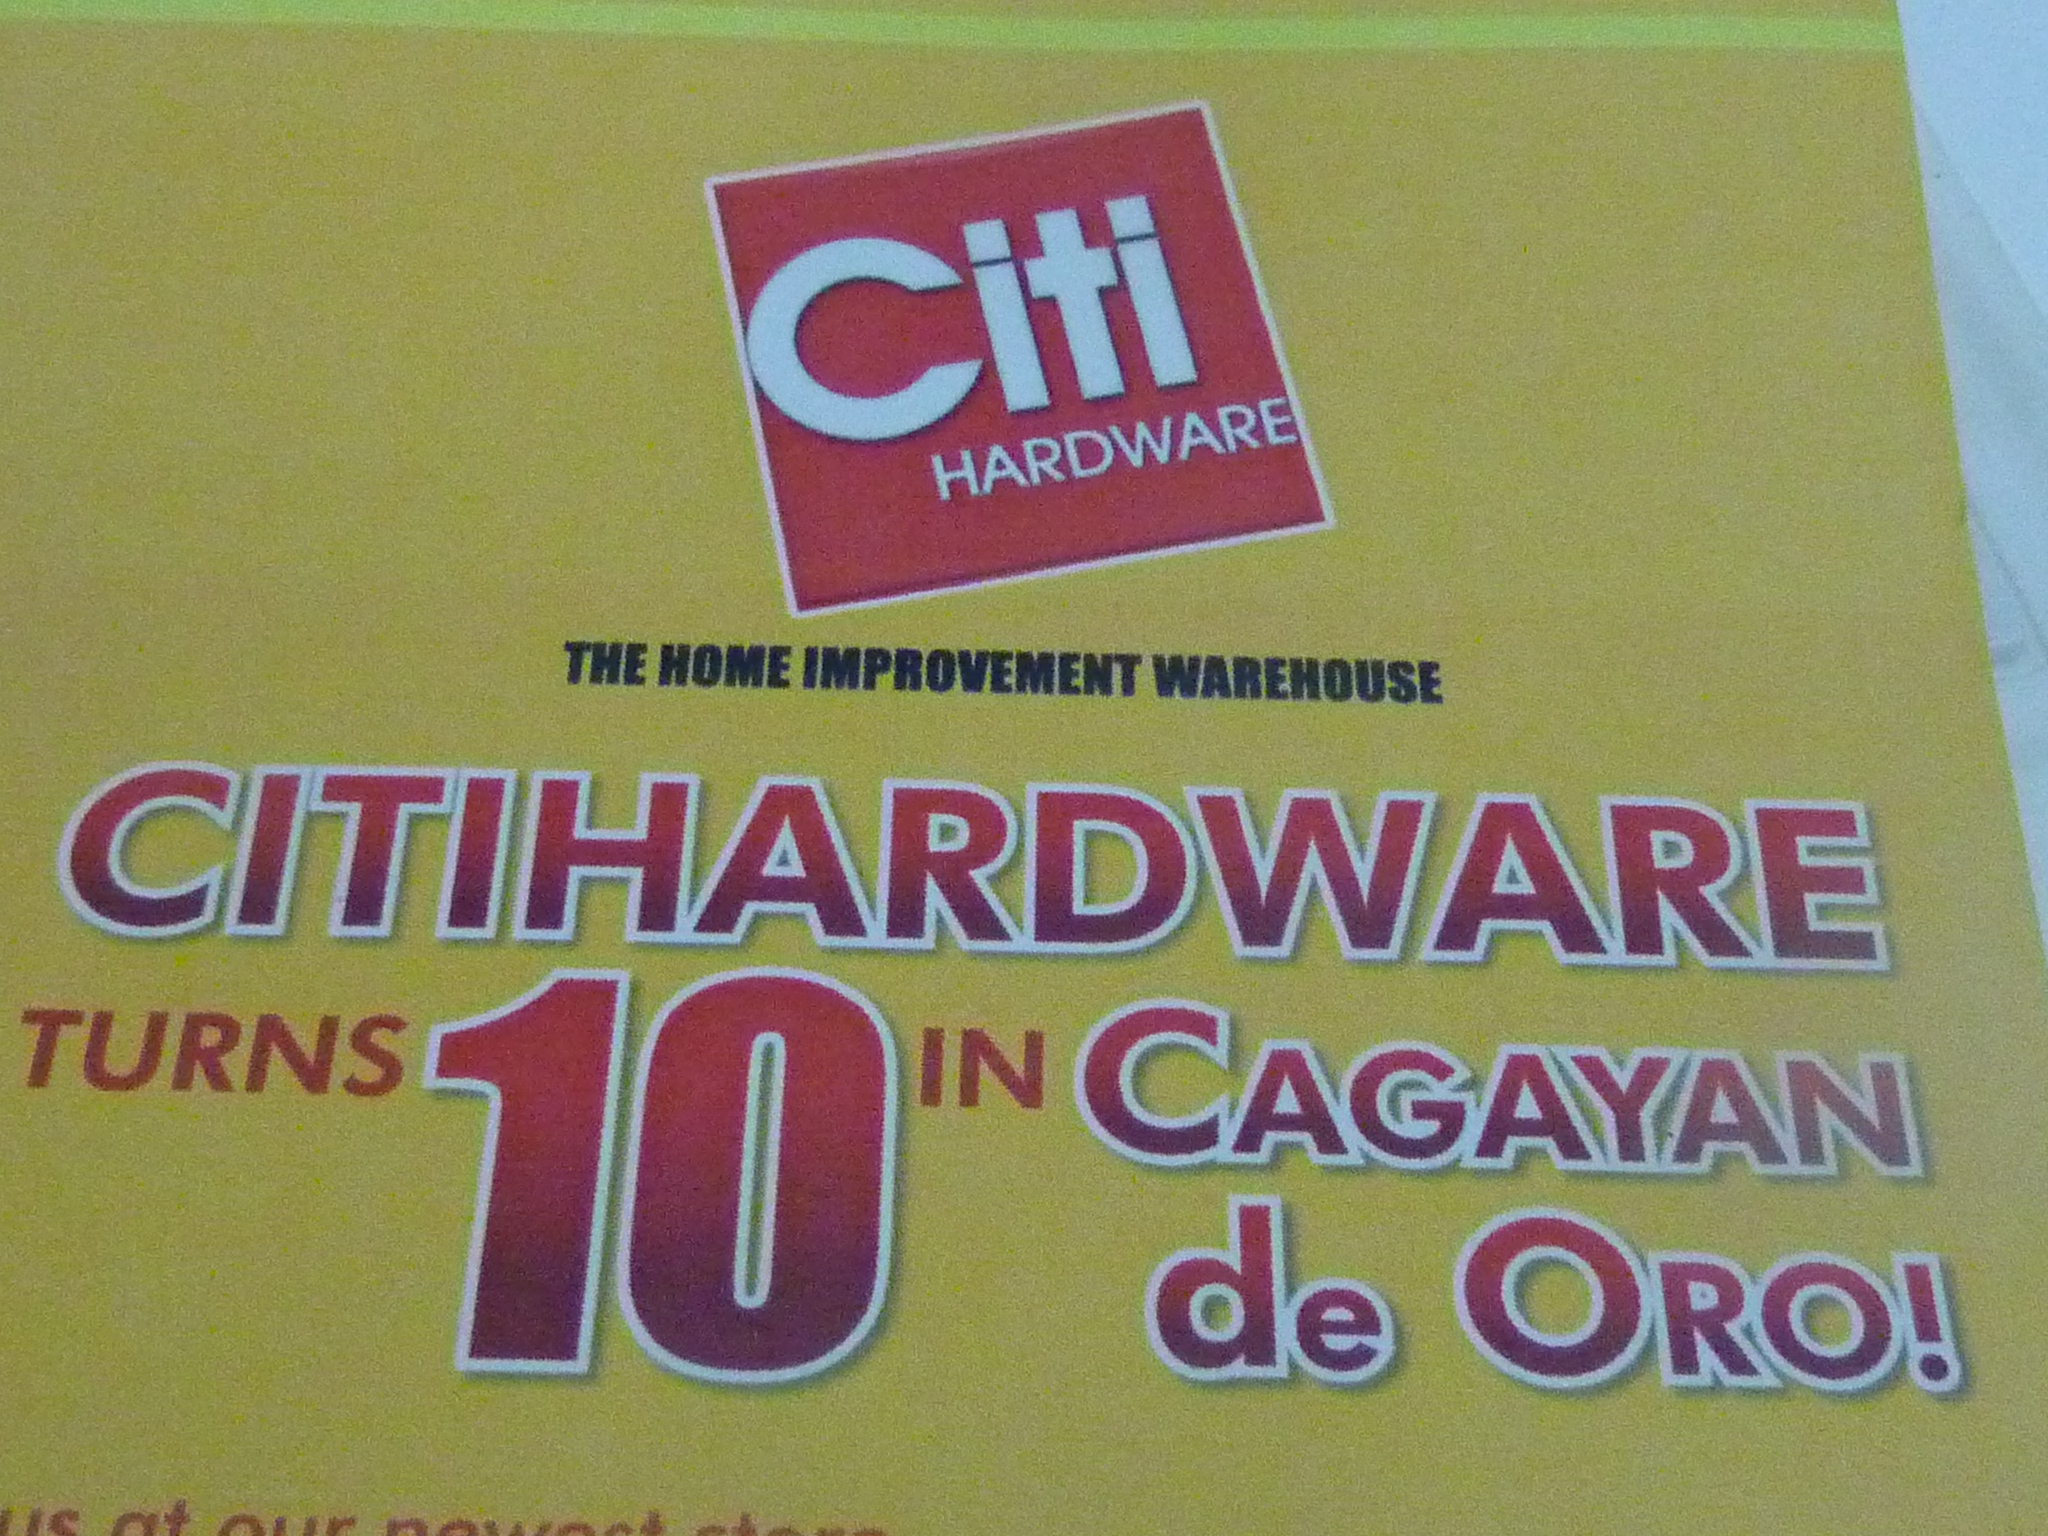 Managing the Citihardware 10th anniversary celebration in CDO